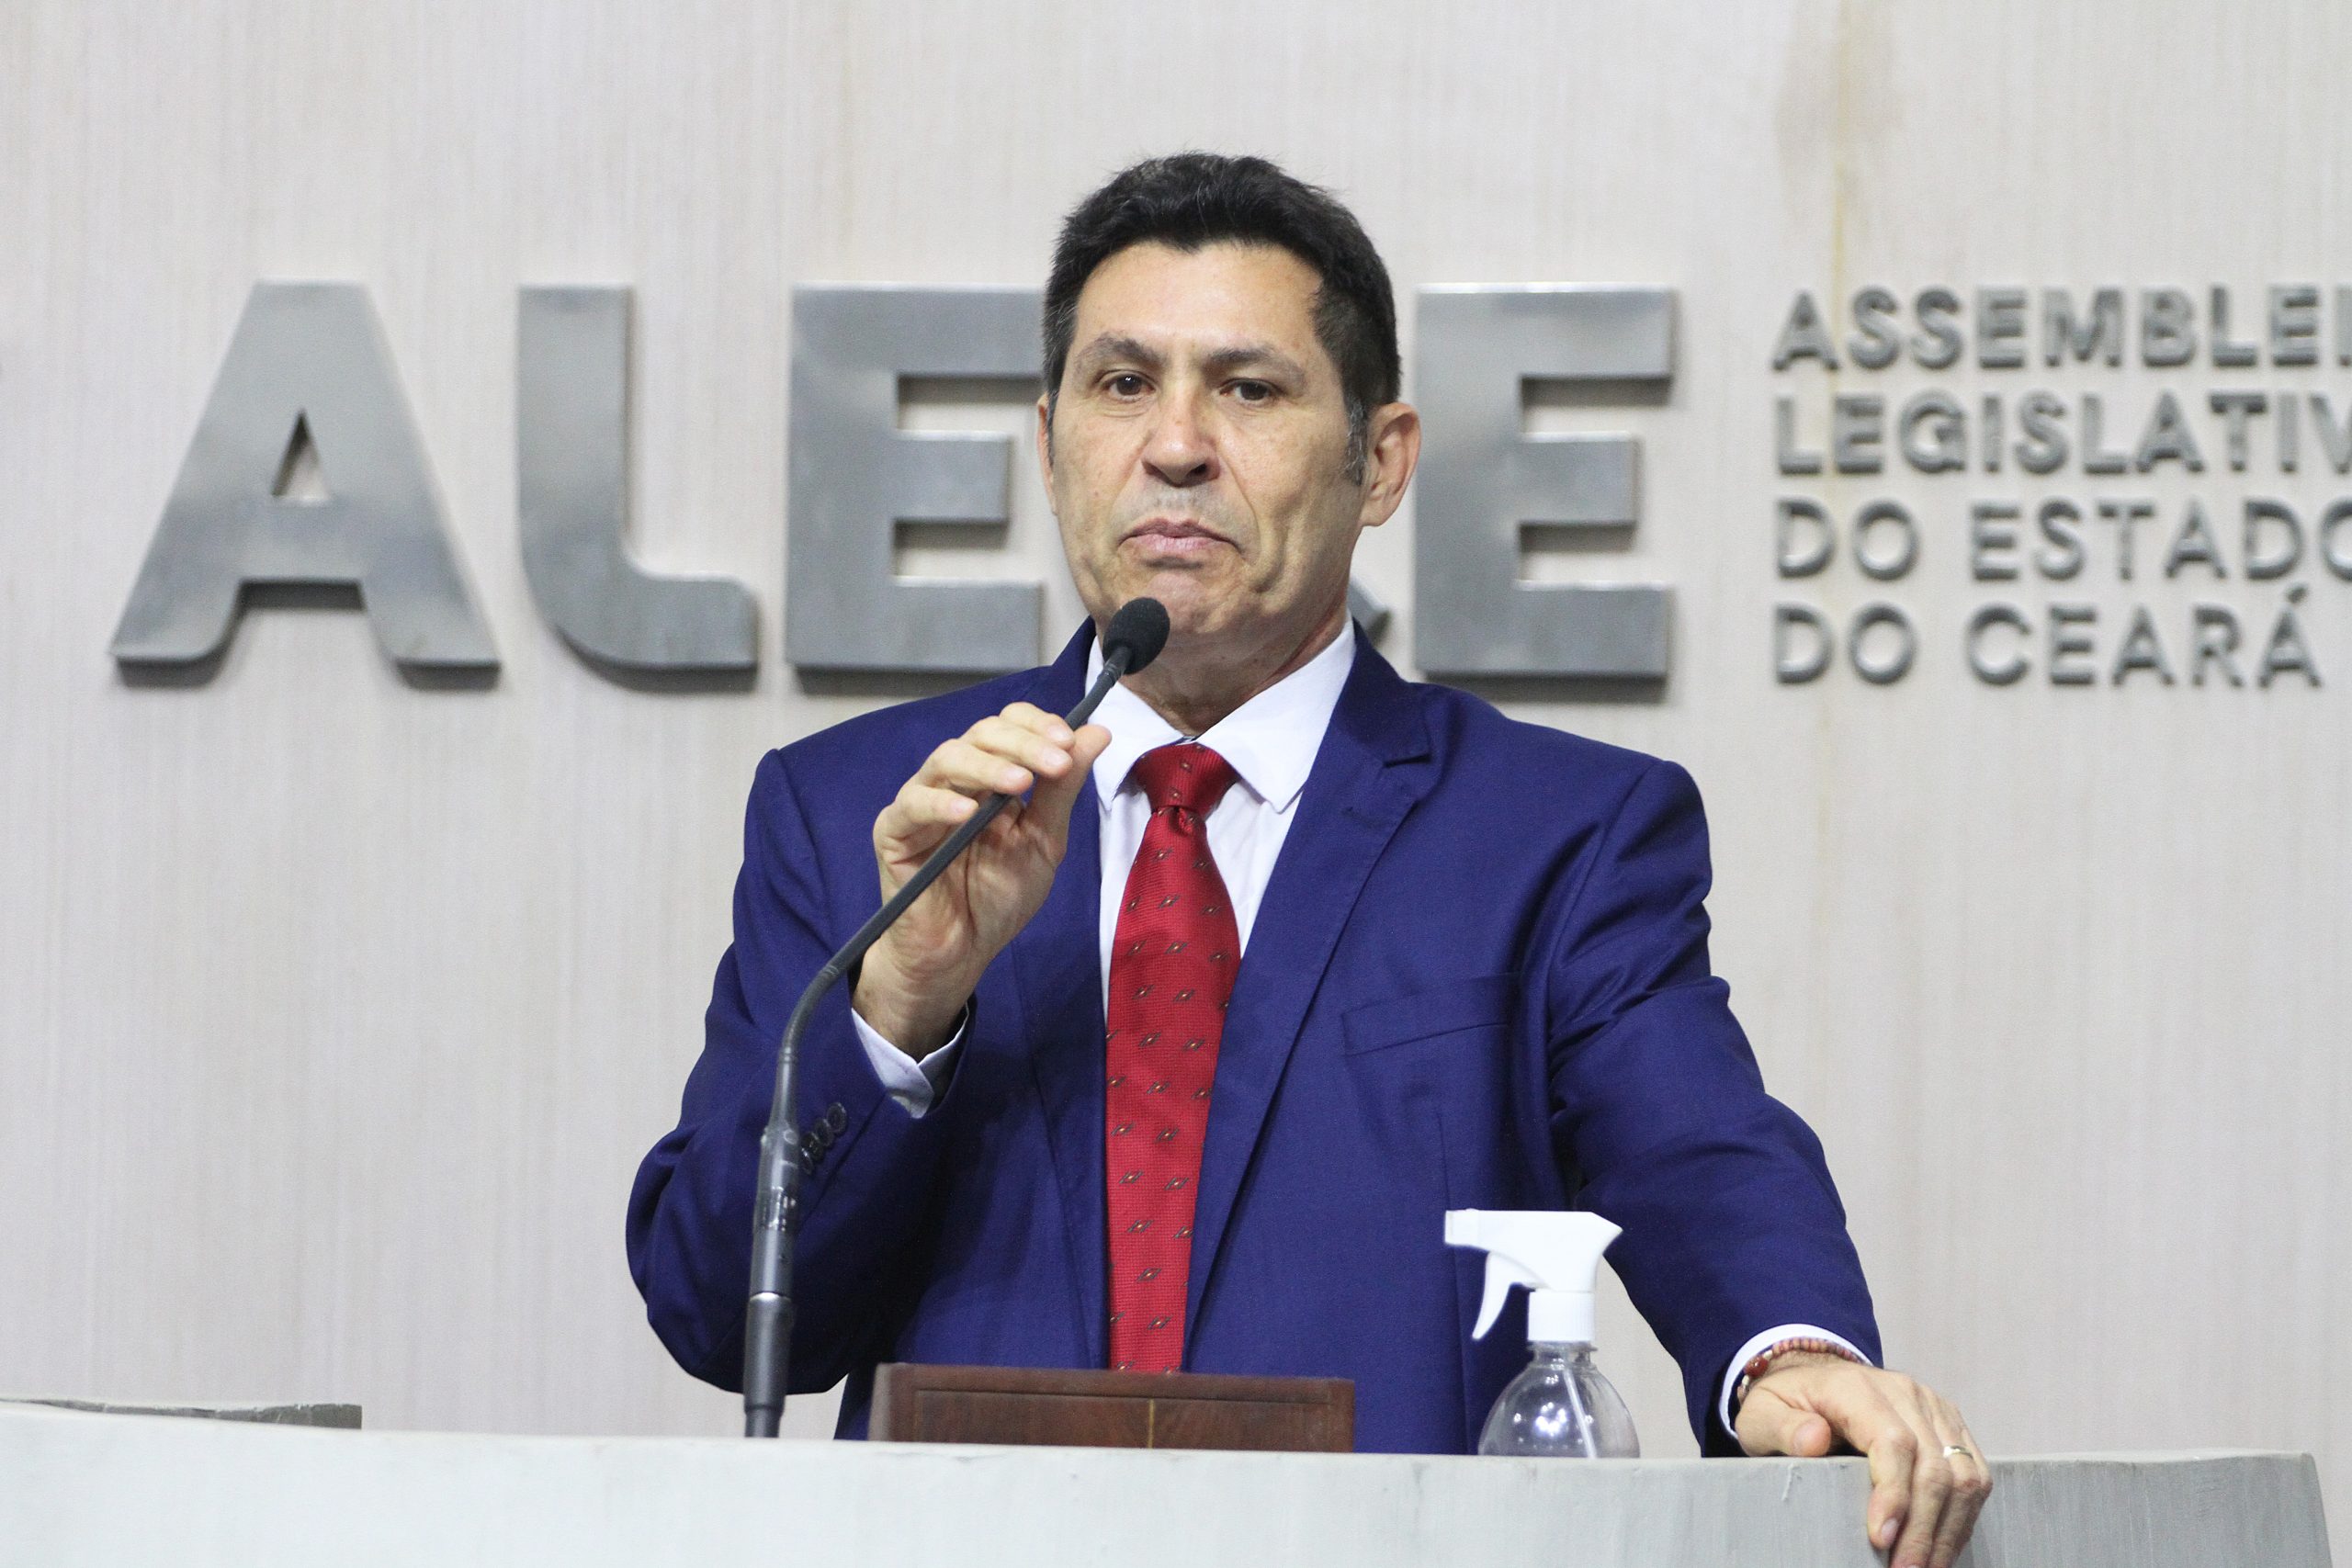 “O PT escolherá o candidato a prefeito de Fortaleza de forma autônoma e democrática”, afirma De Assis Diniz